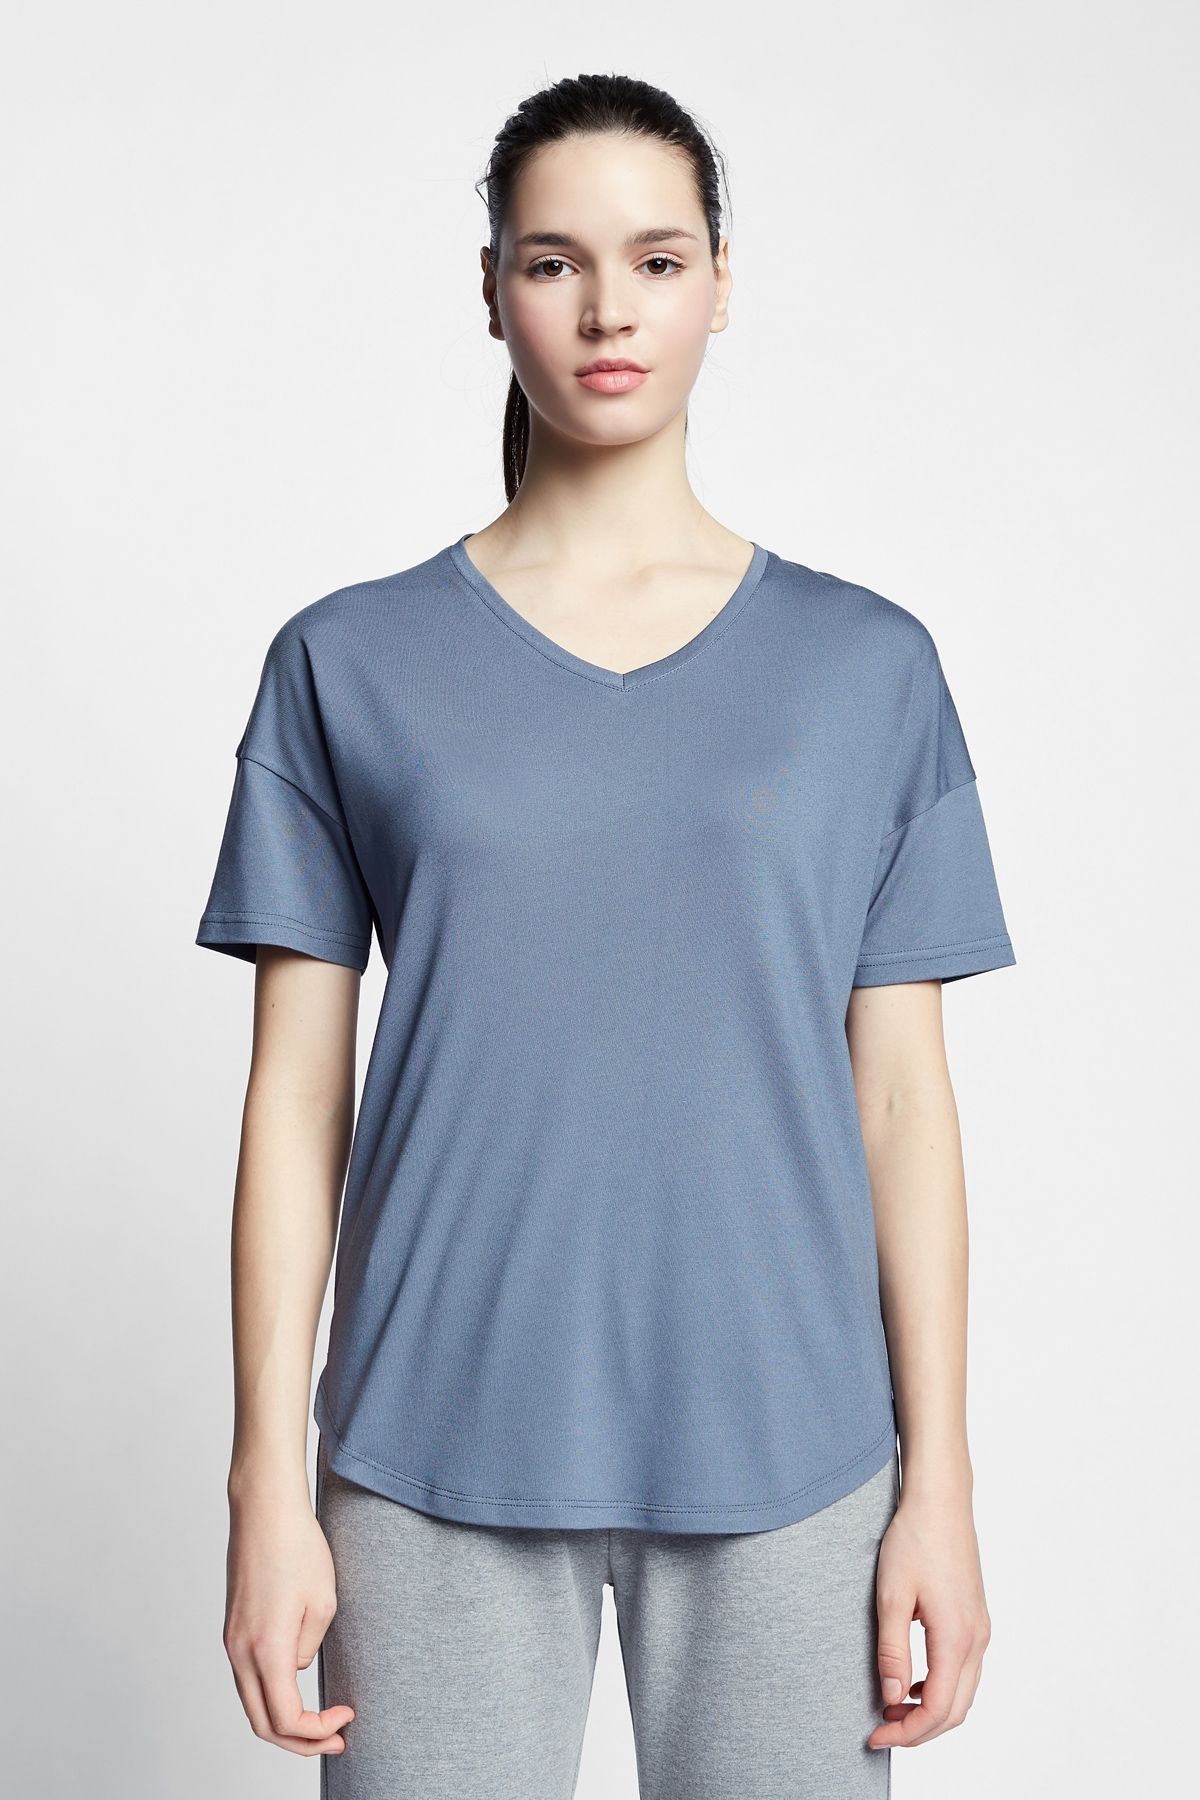 Lescon Kadın Kısa Kollu T-shirt 22s-2215-22n